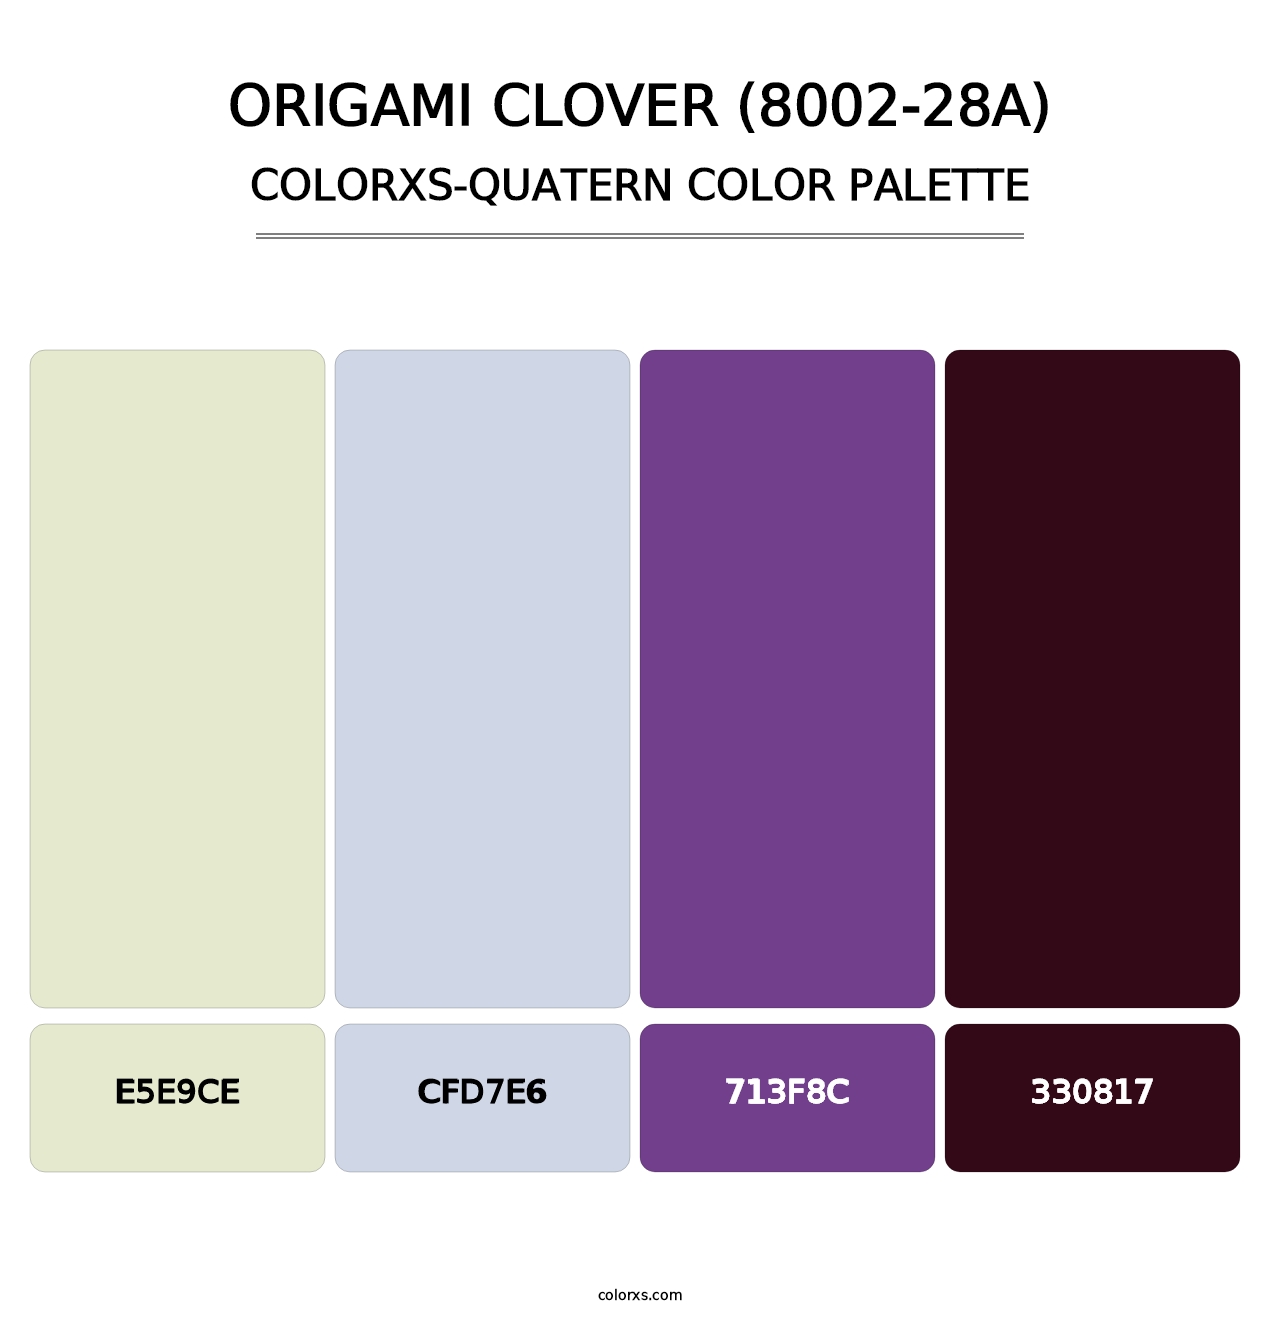 Origami Clover (8002-28A) - Colorxs Quatern Palette